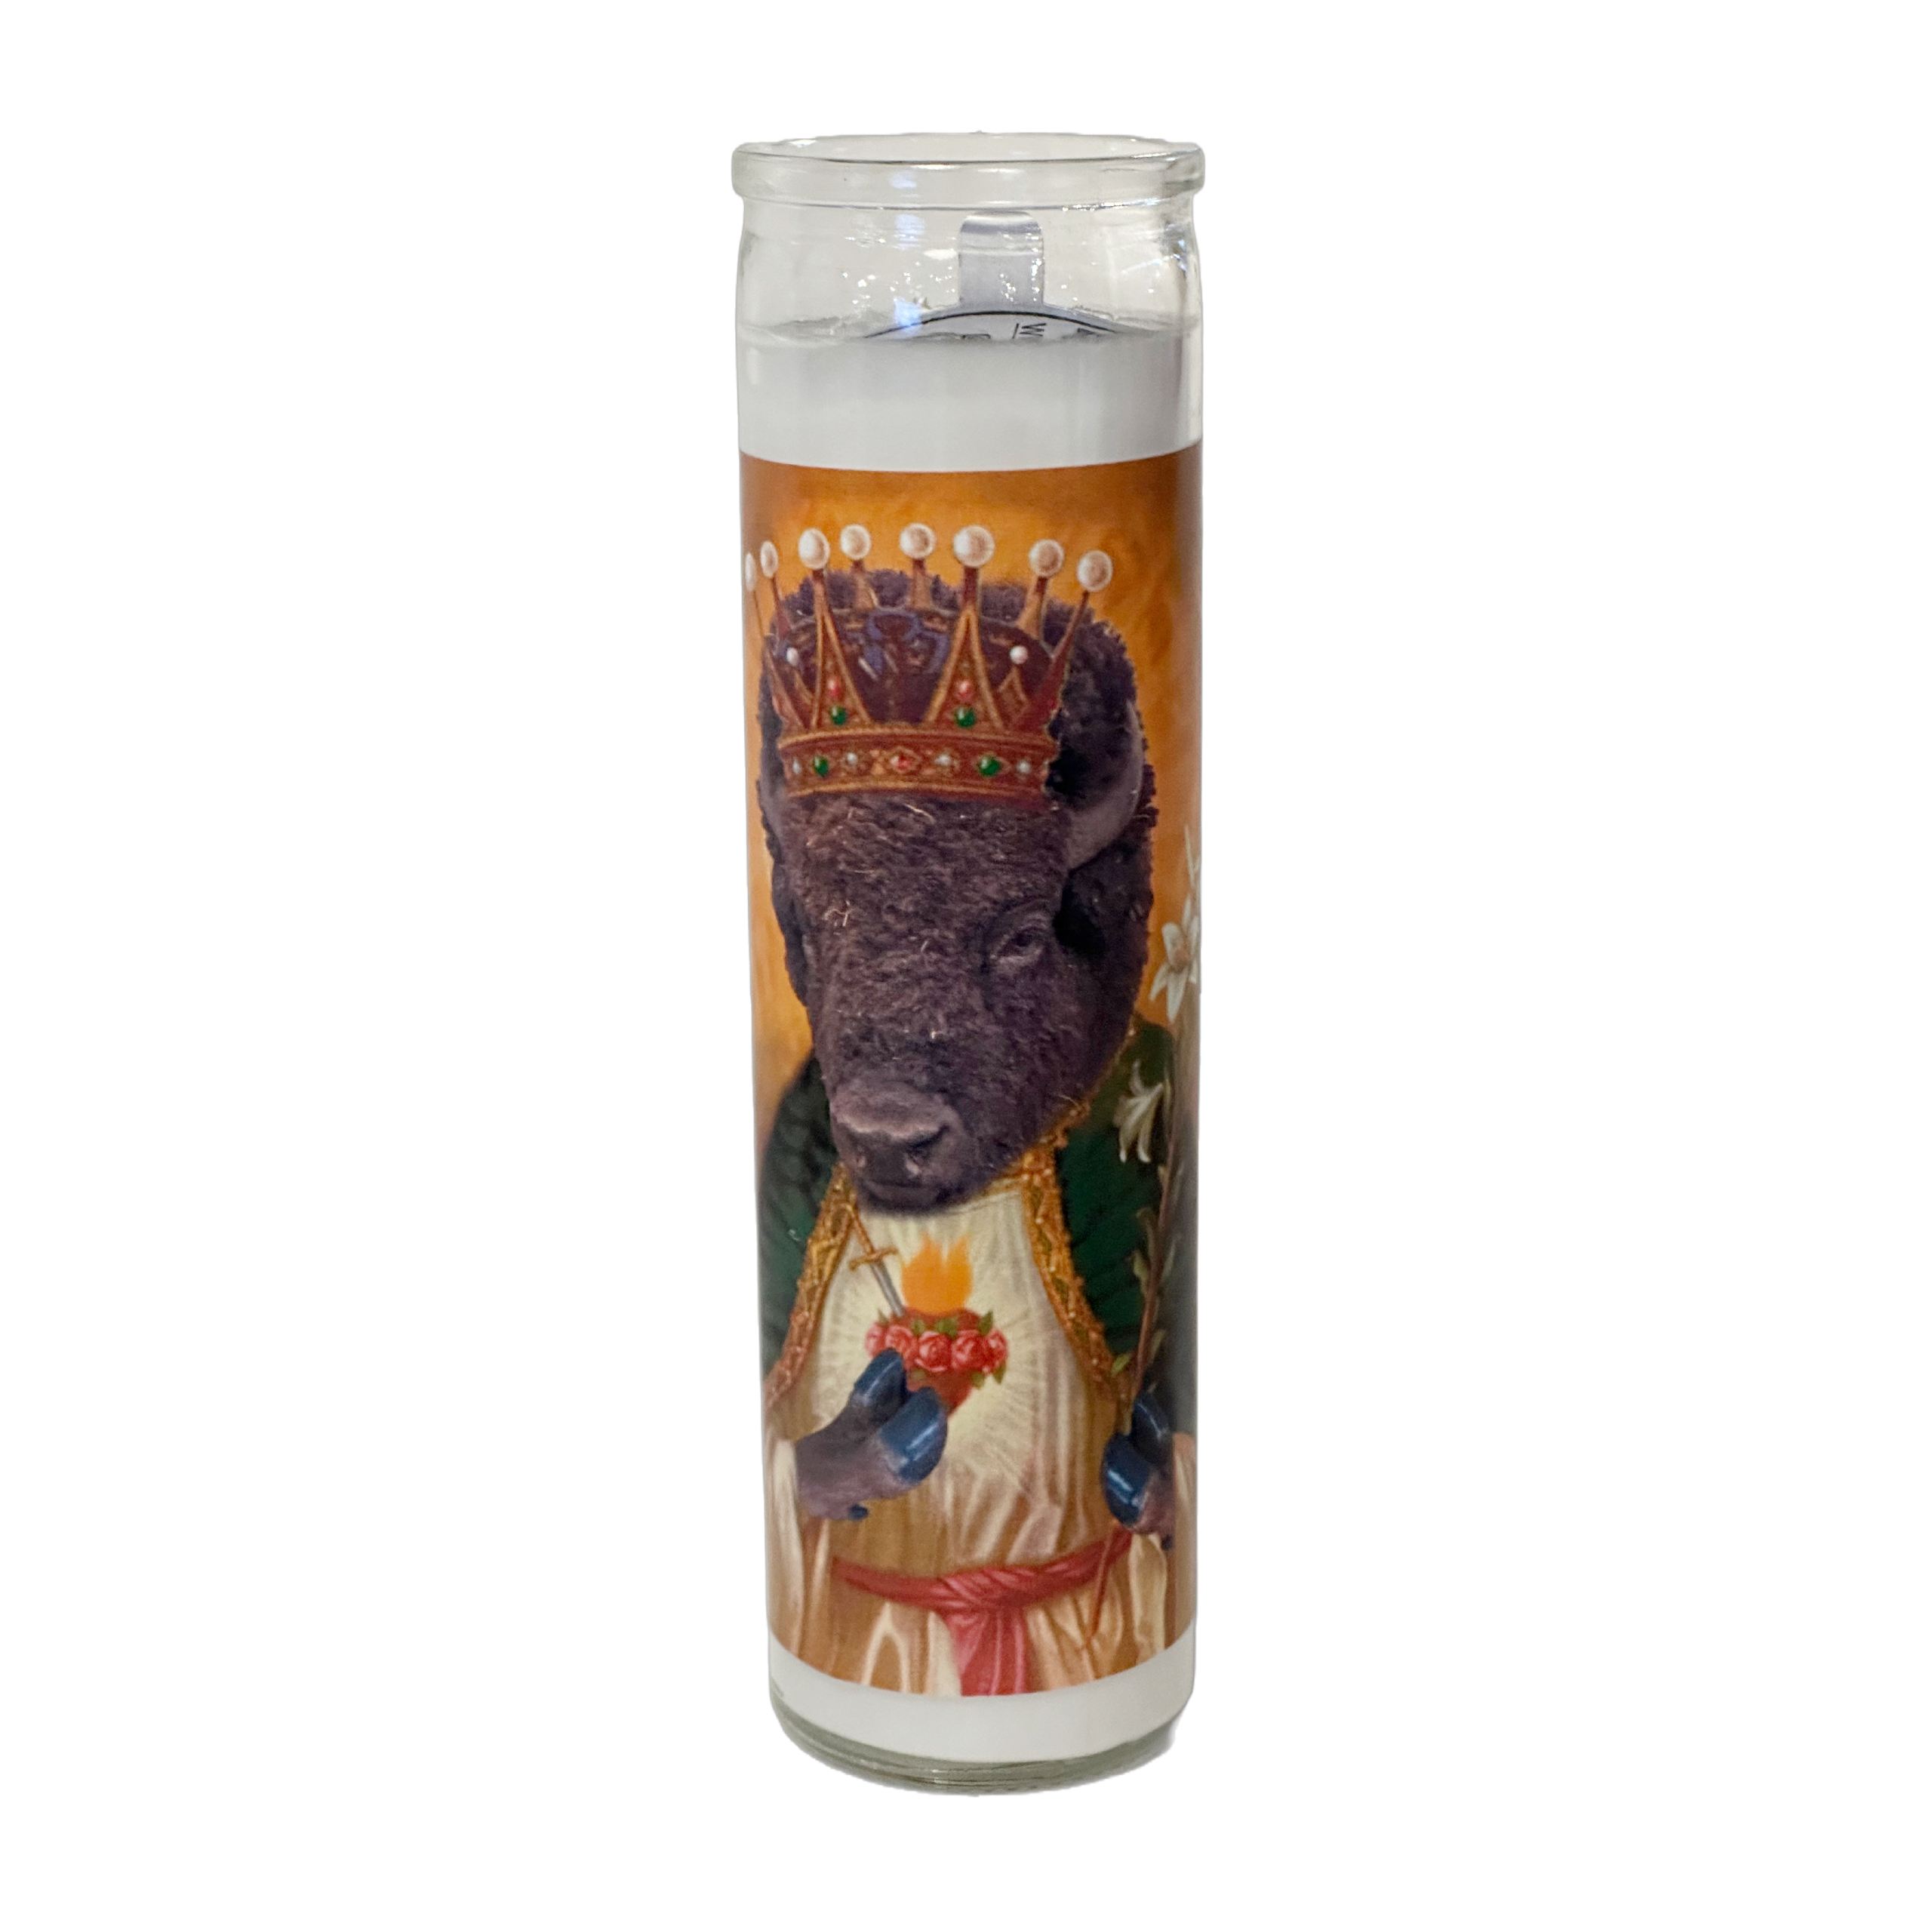 Wildlife Prayer Candle - Bison